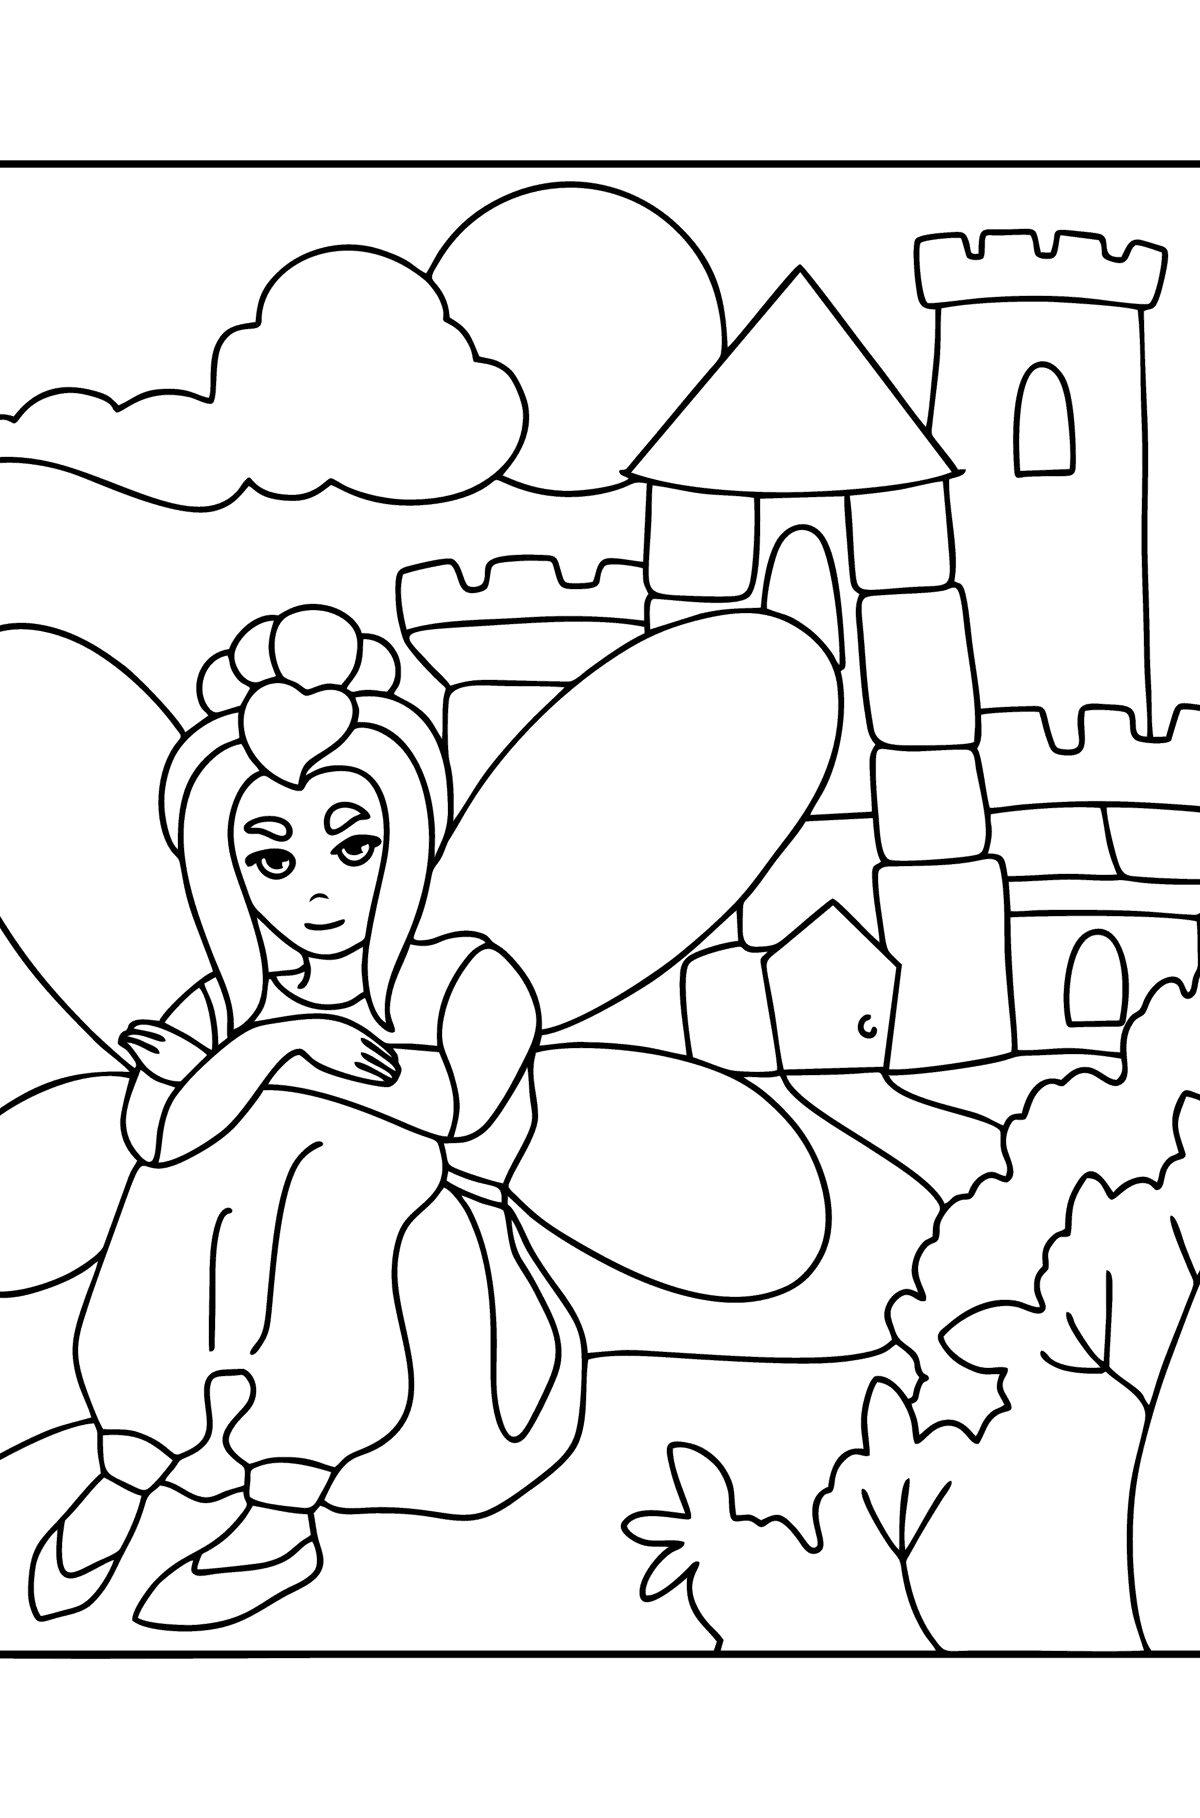 Desenho de fada no castelo para colorir - Imagens para Colorir para Crianças